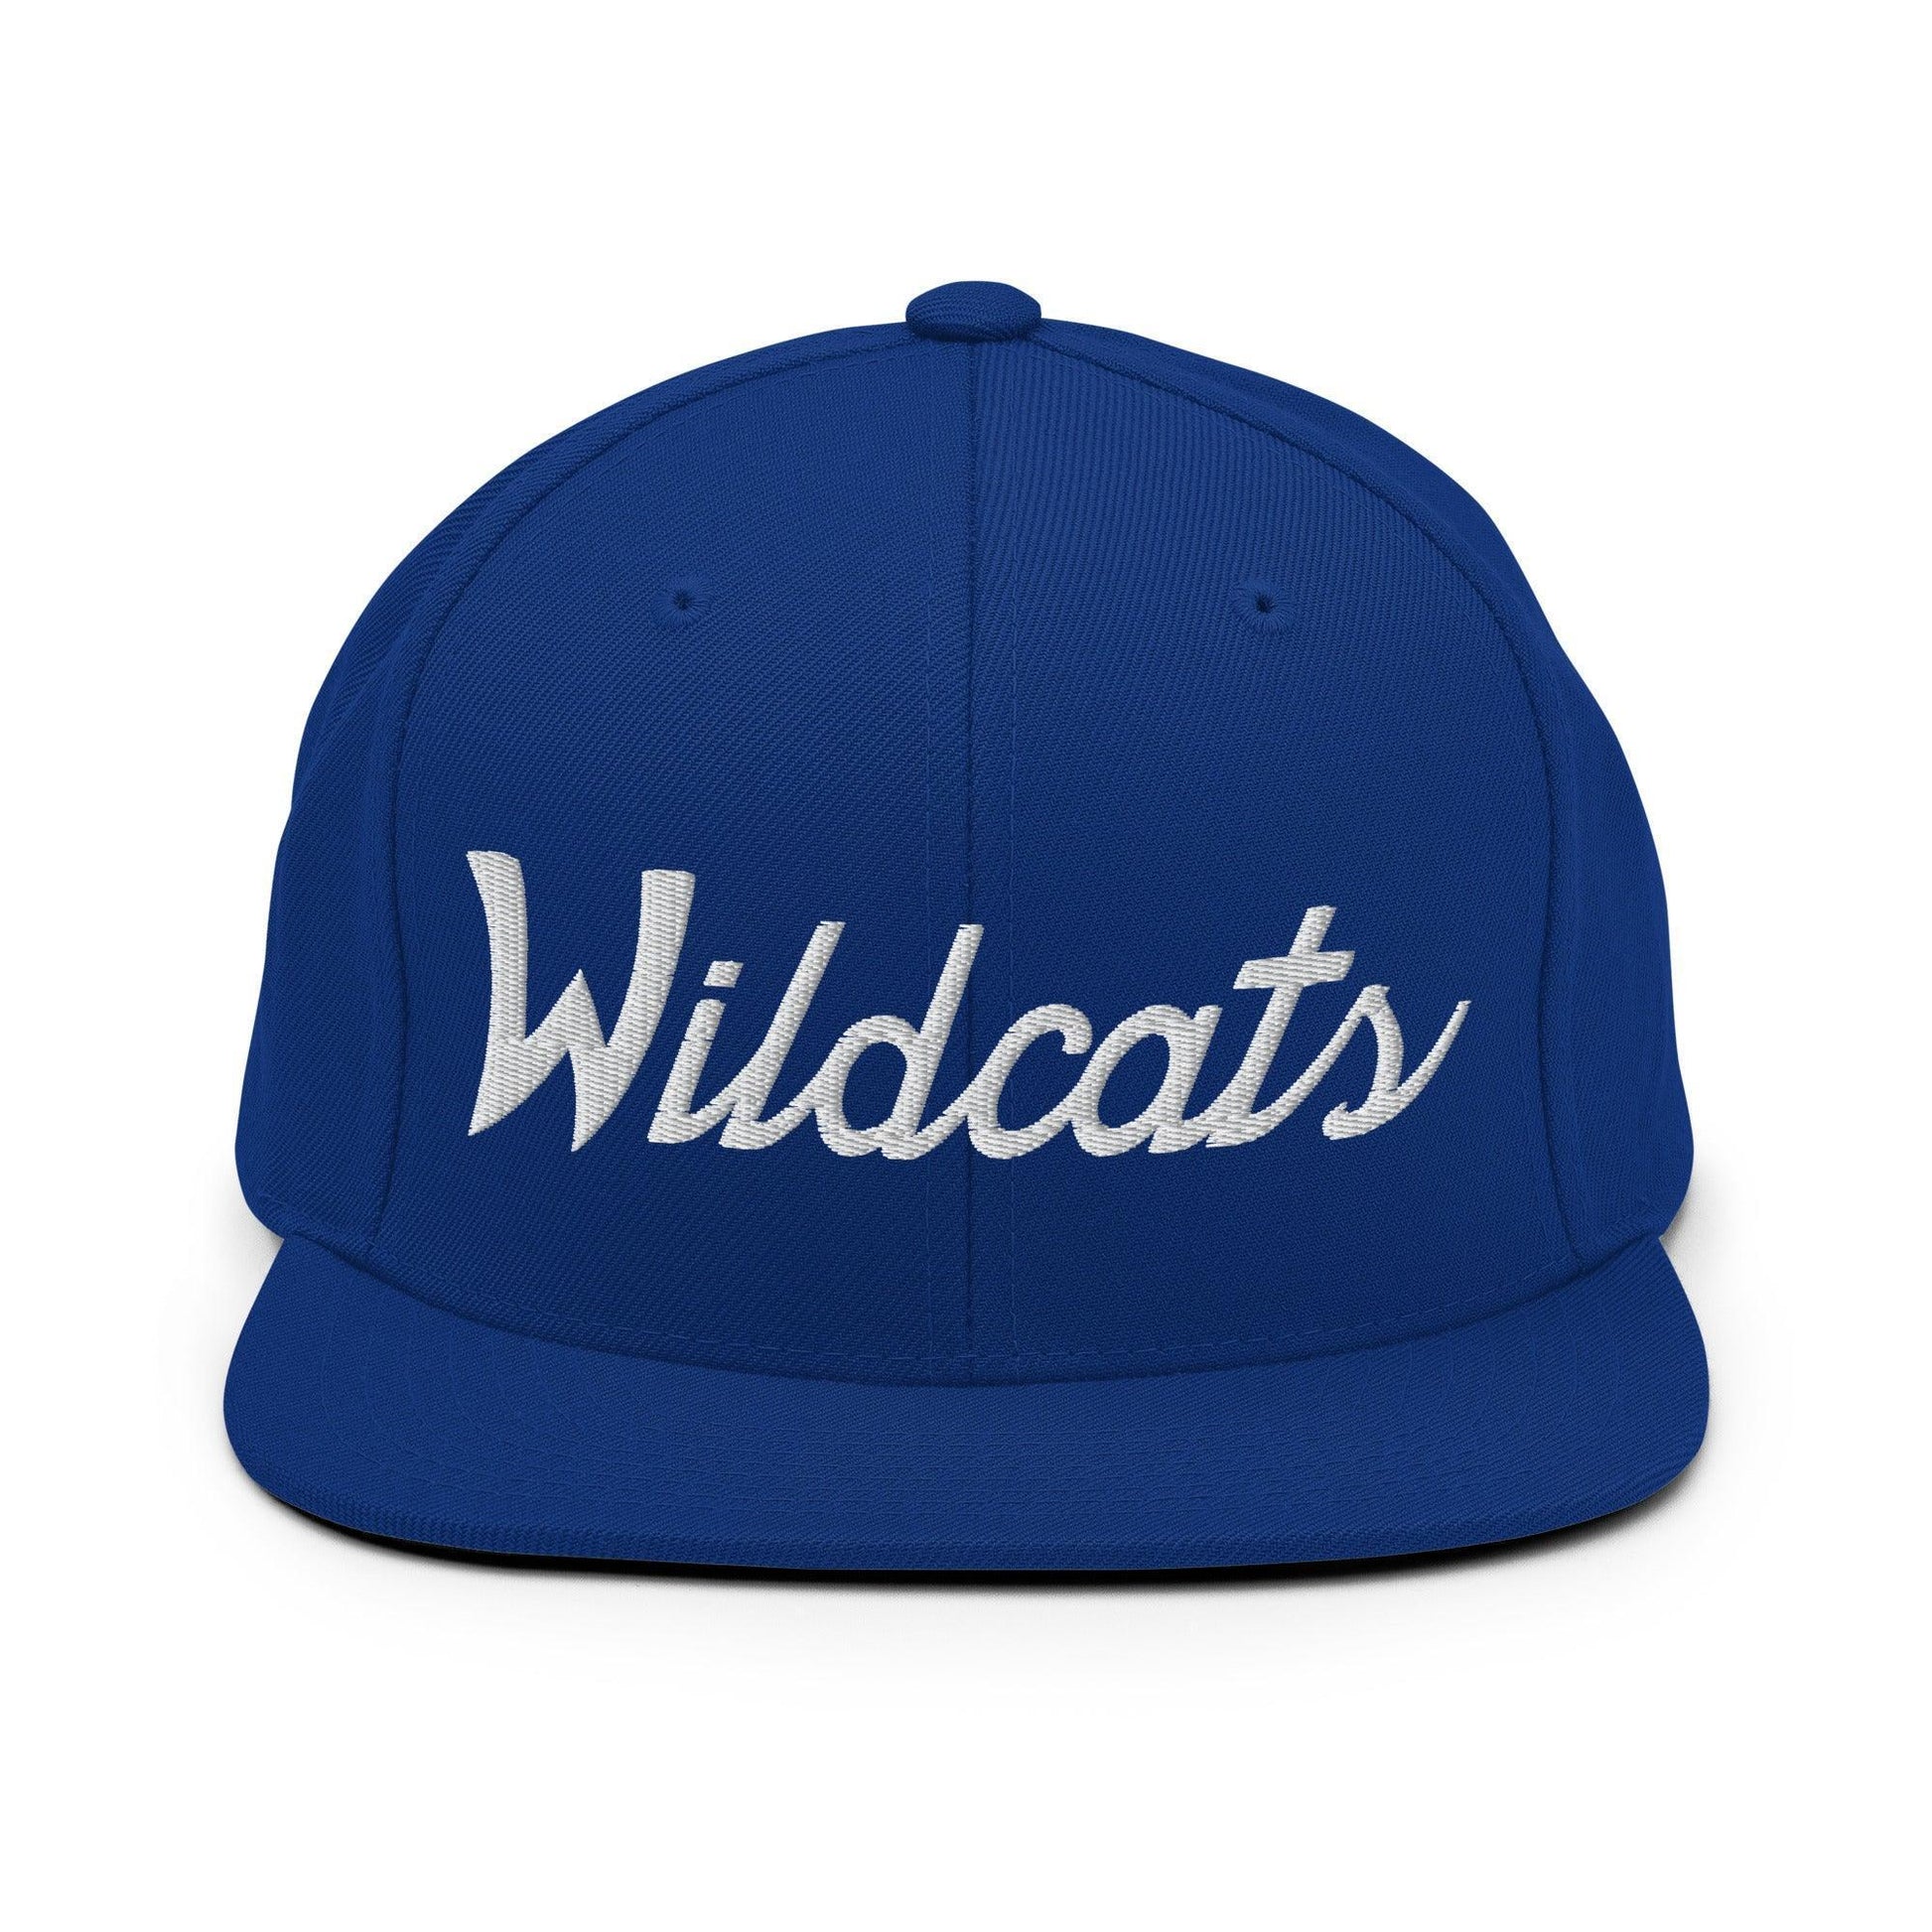 Wildcats School Mascot Script Snapback Hat Royal Blue